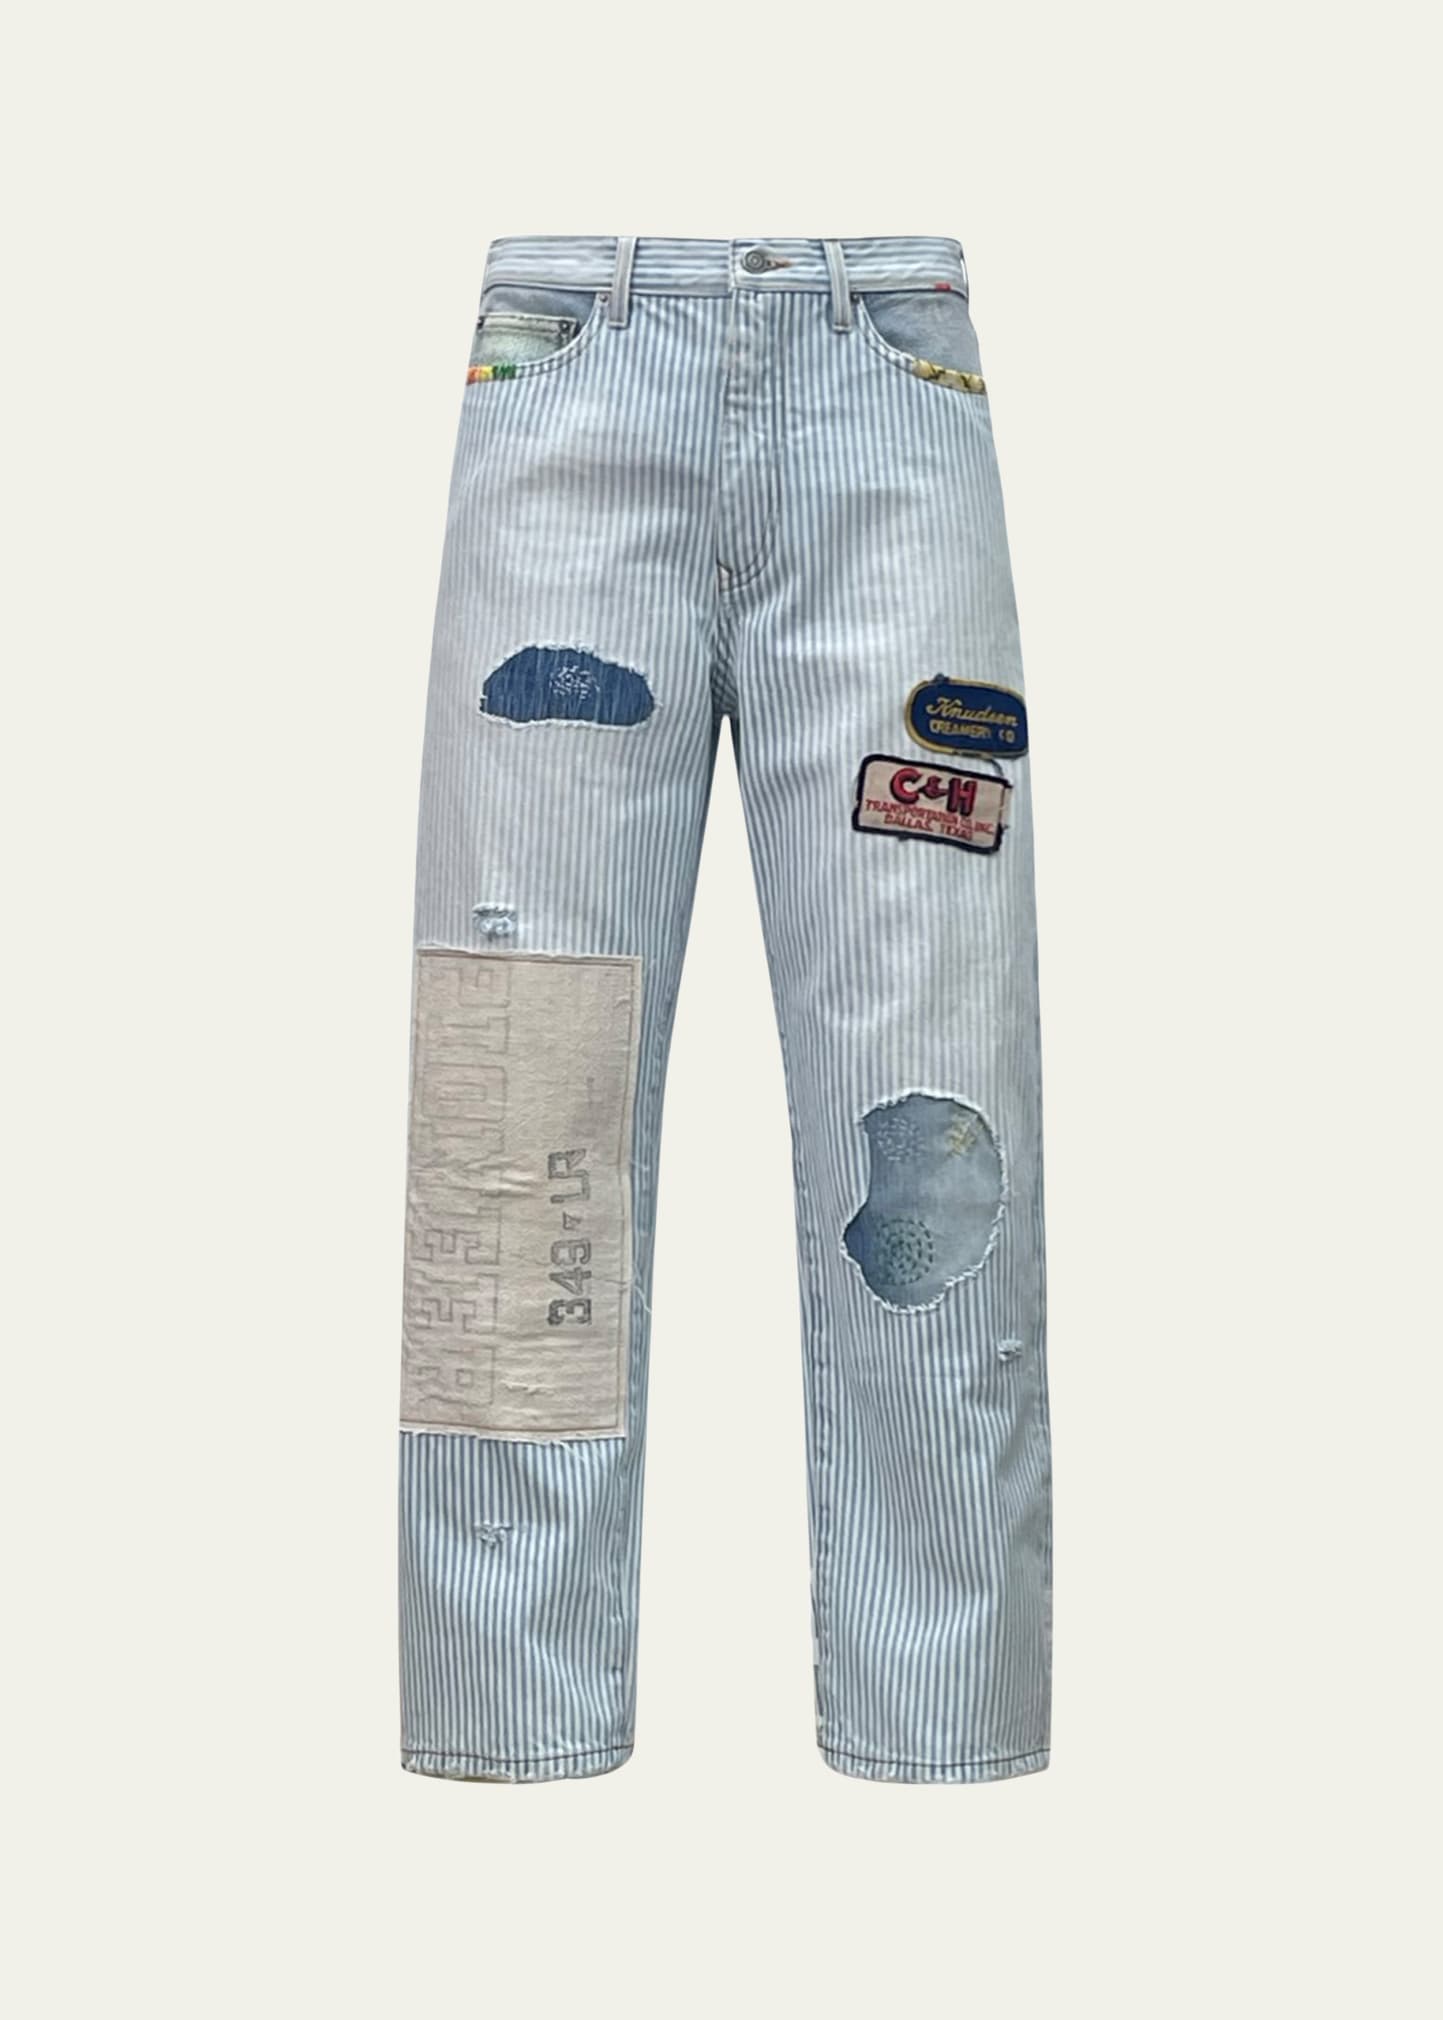 Cout De La Liberte Men's Striped Patchwork Jeans